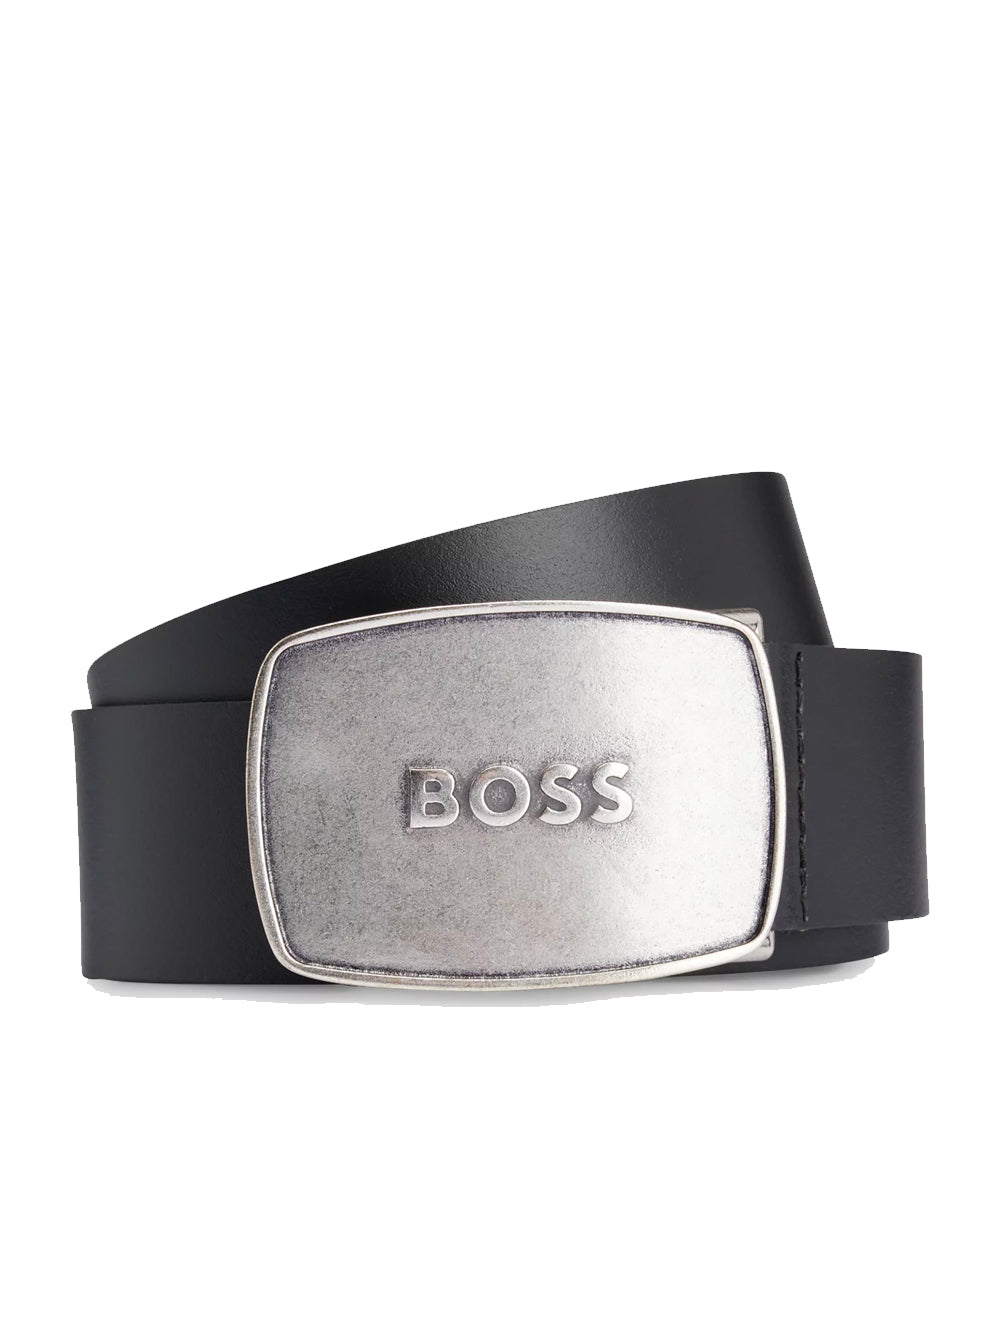 BOSS MEN Brushed Metal Logo Leather Belt Black/Silver - MAISONDEFASHION.COM